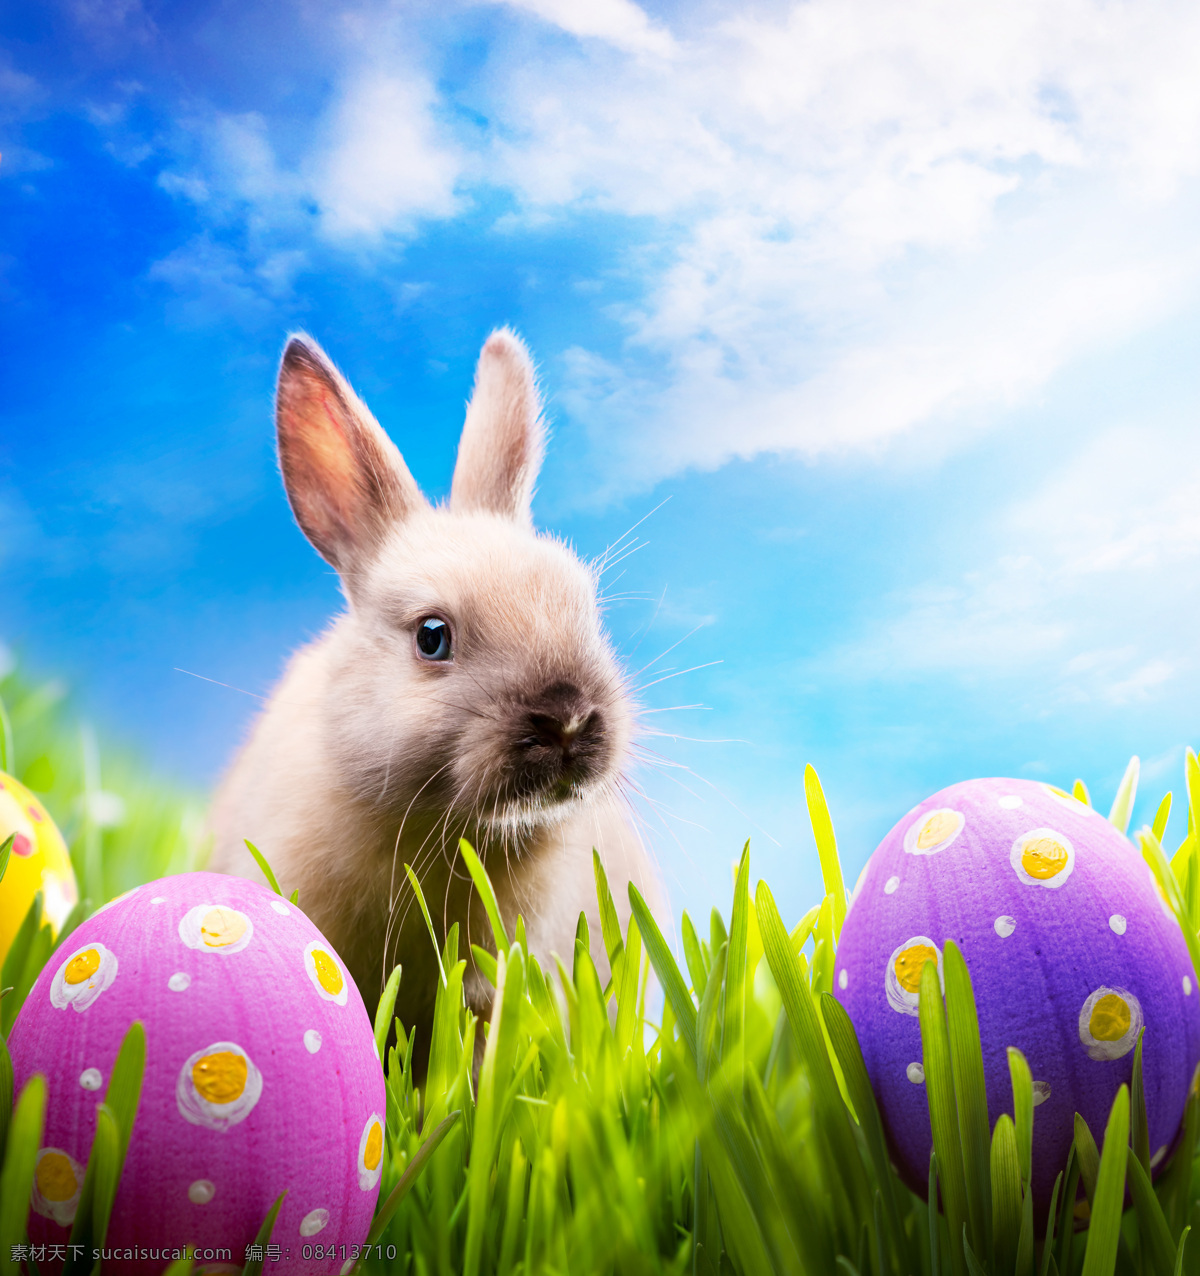 复活节 兔子 彩蛋 节日 可爱 草地 天空 节日庆典 生活百科 白色